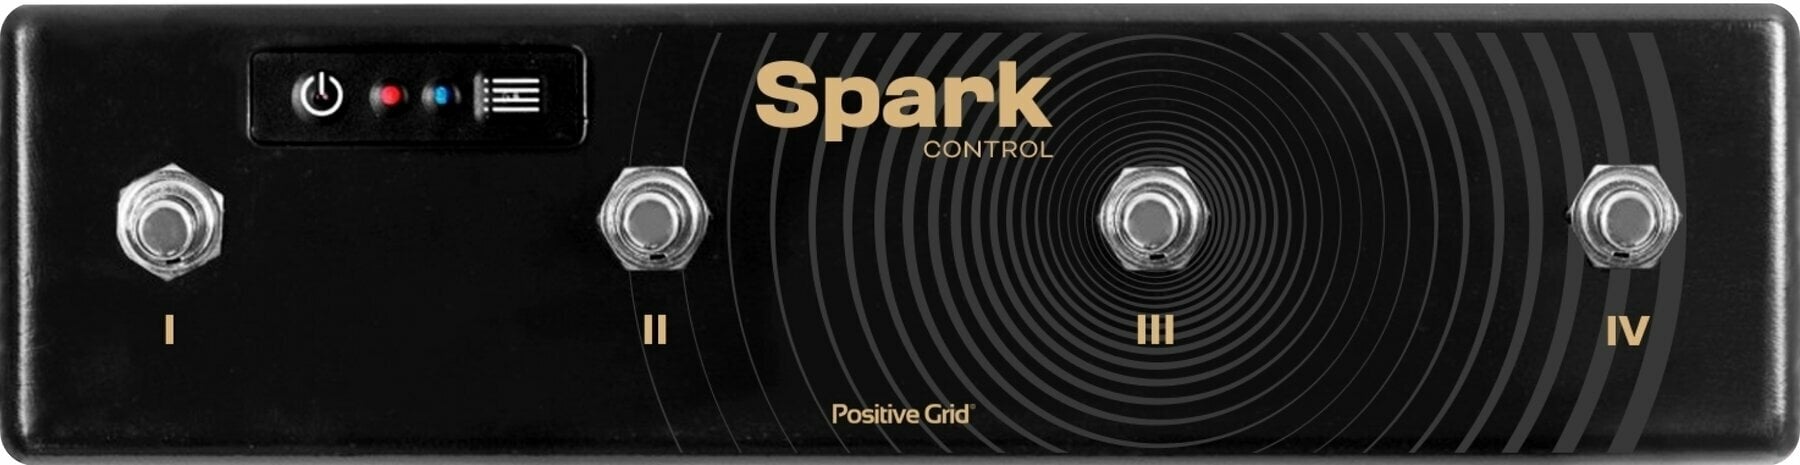 Pédalier pour ampli guitare Positive Grid Spark Control Pédalier pour ampli guitare